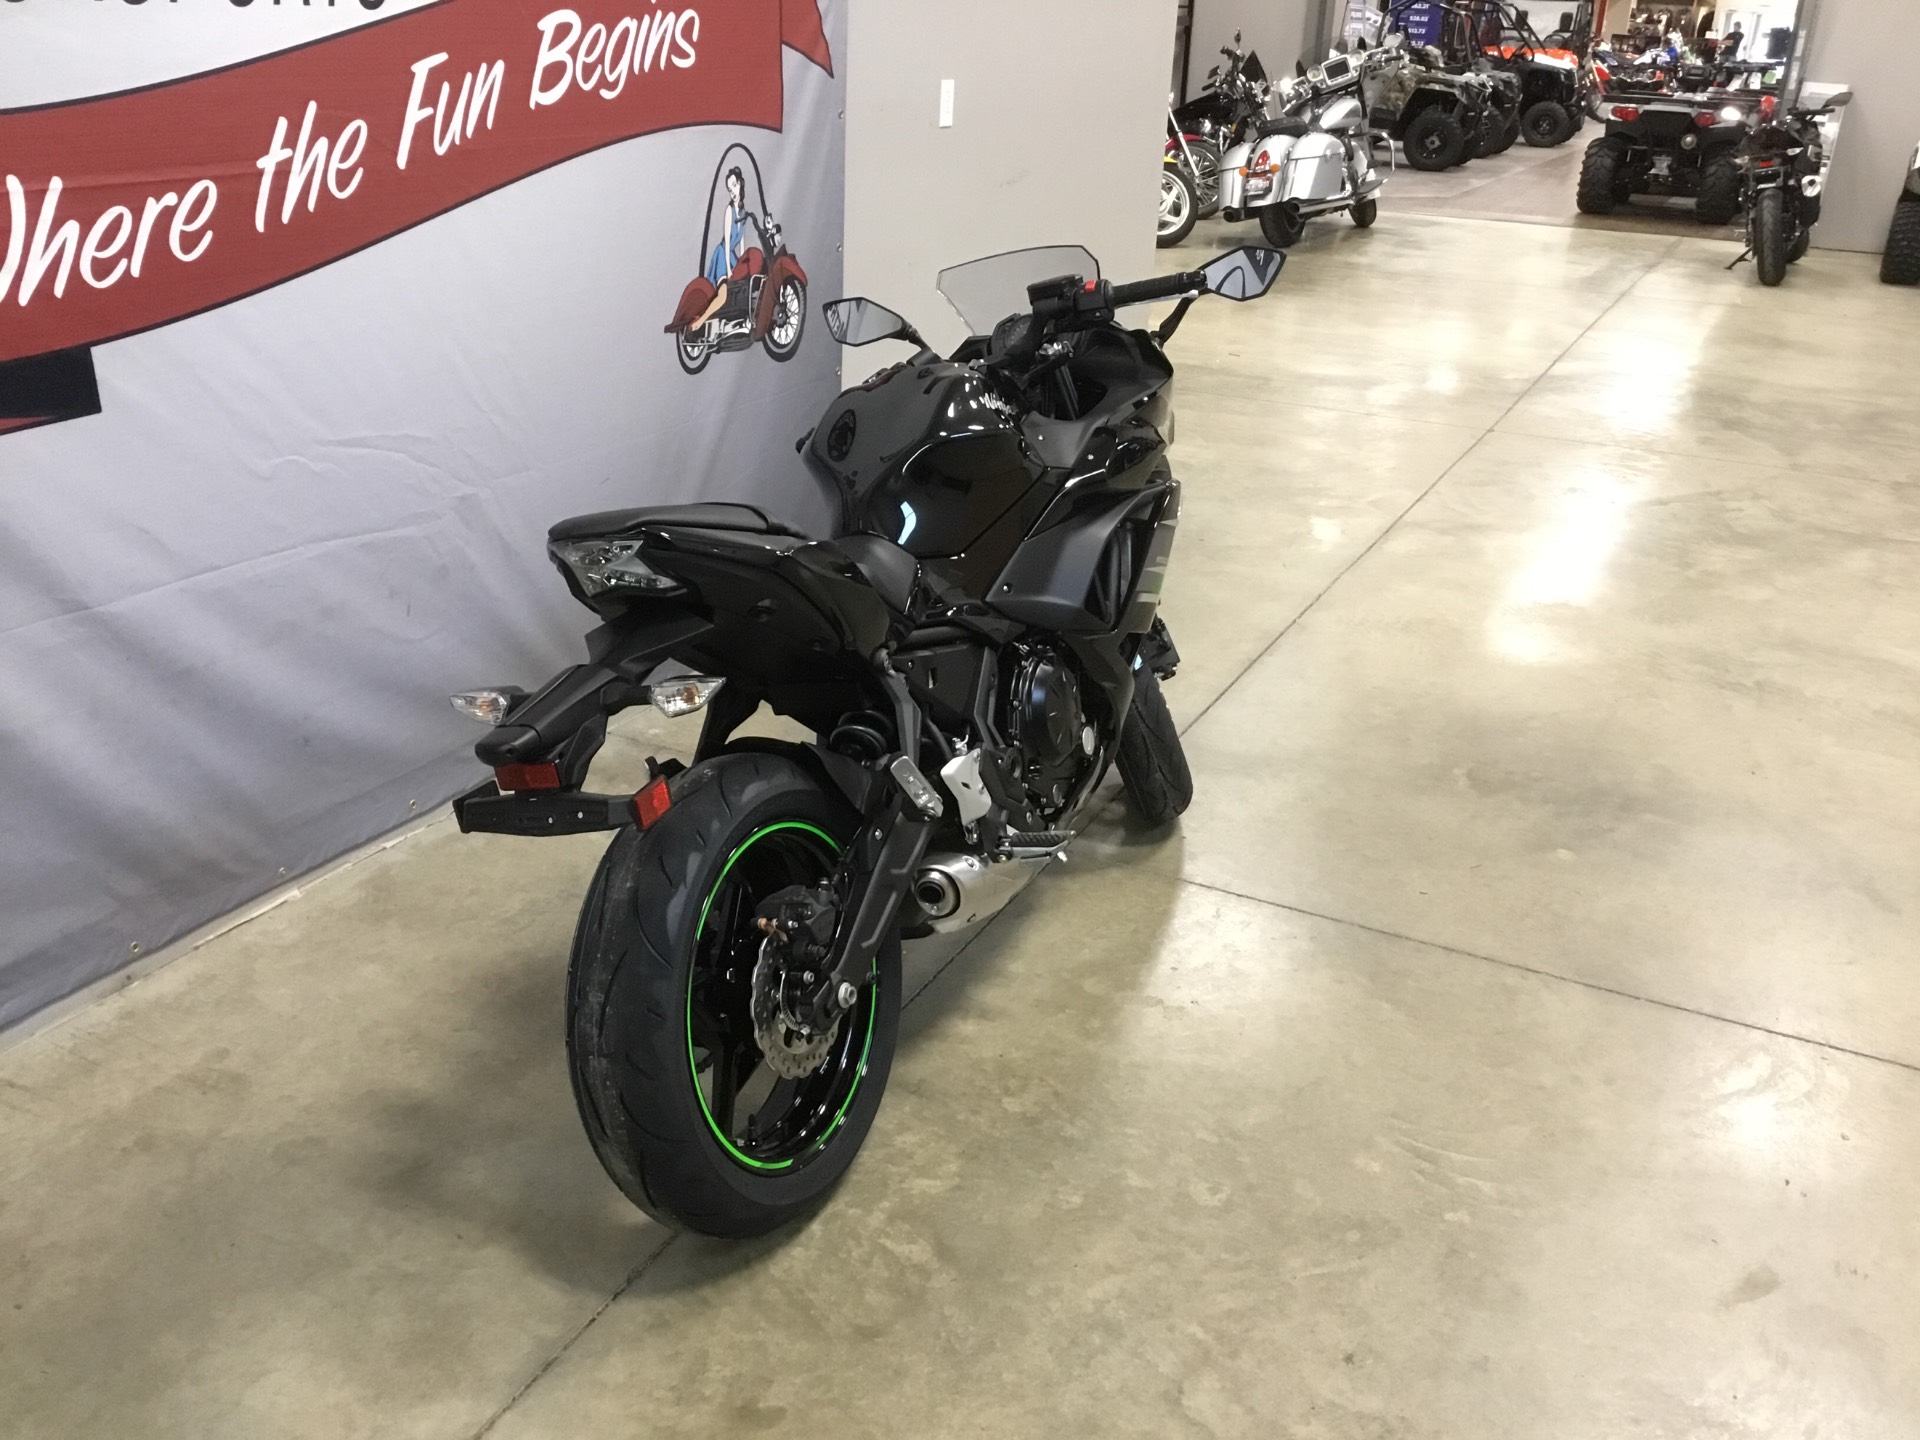 2019 Kawasaki Ninja 650 ABS 2